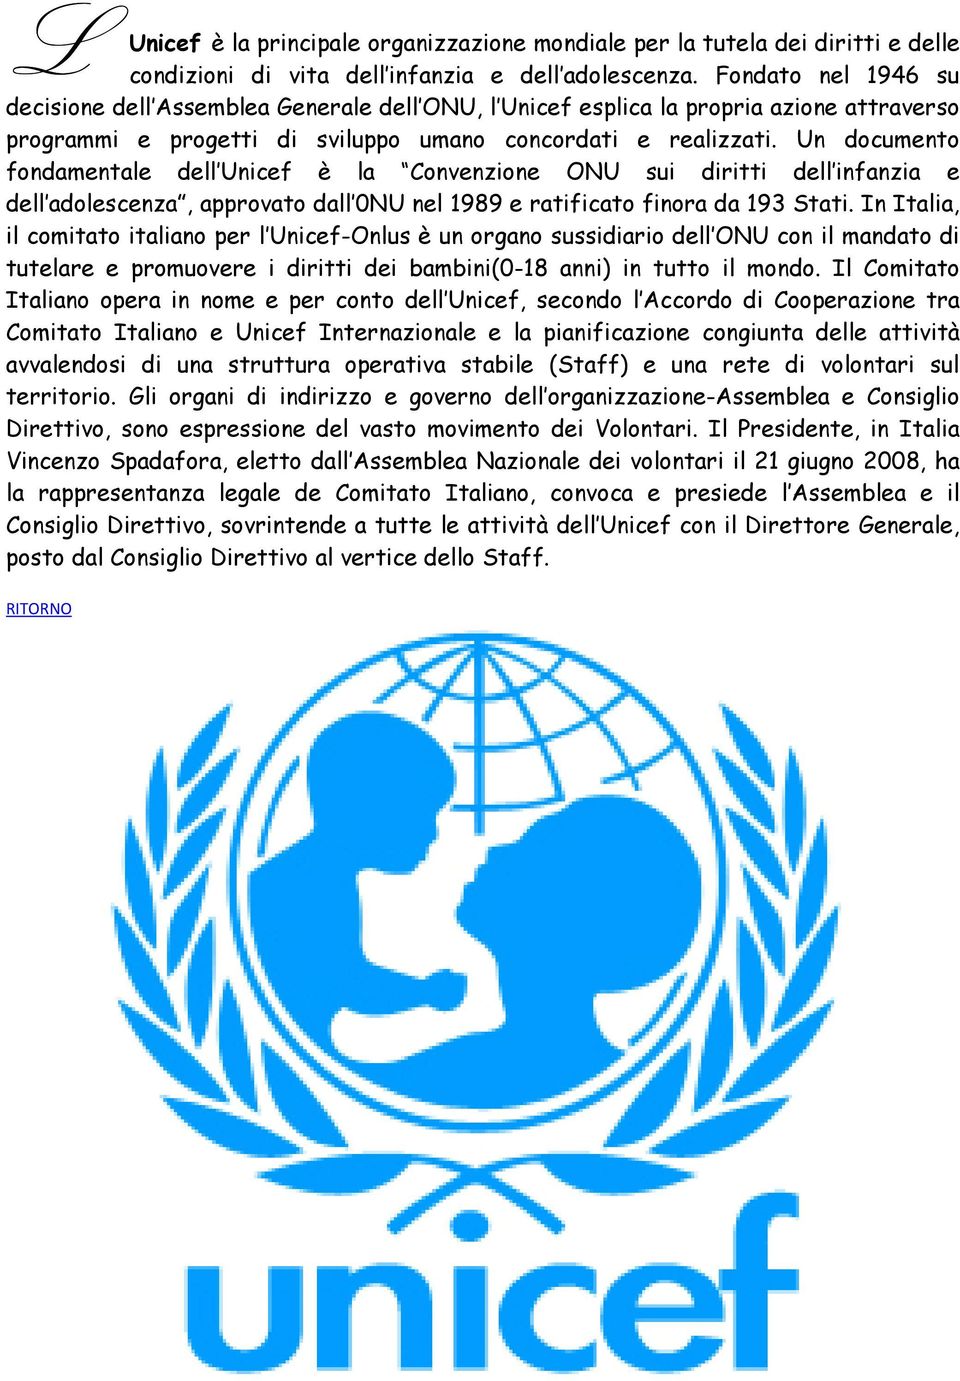 Un documento fondamentale dell Unicef è la Convenzione ONU sui diritti dell infanzia e dell adolescenza, approvato dall 0NU nel 1989 e ratificato finora da 193 Stati.